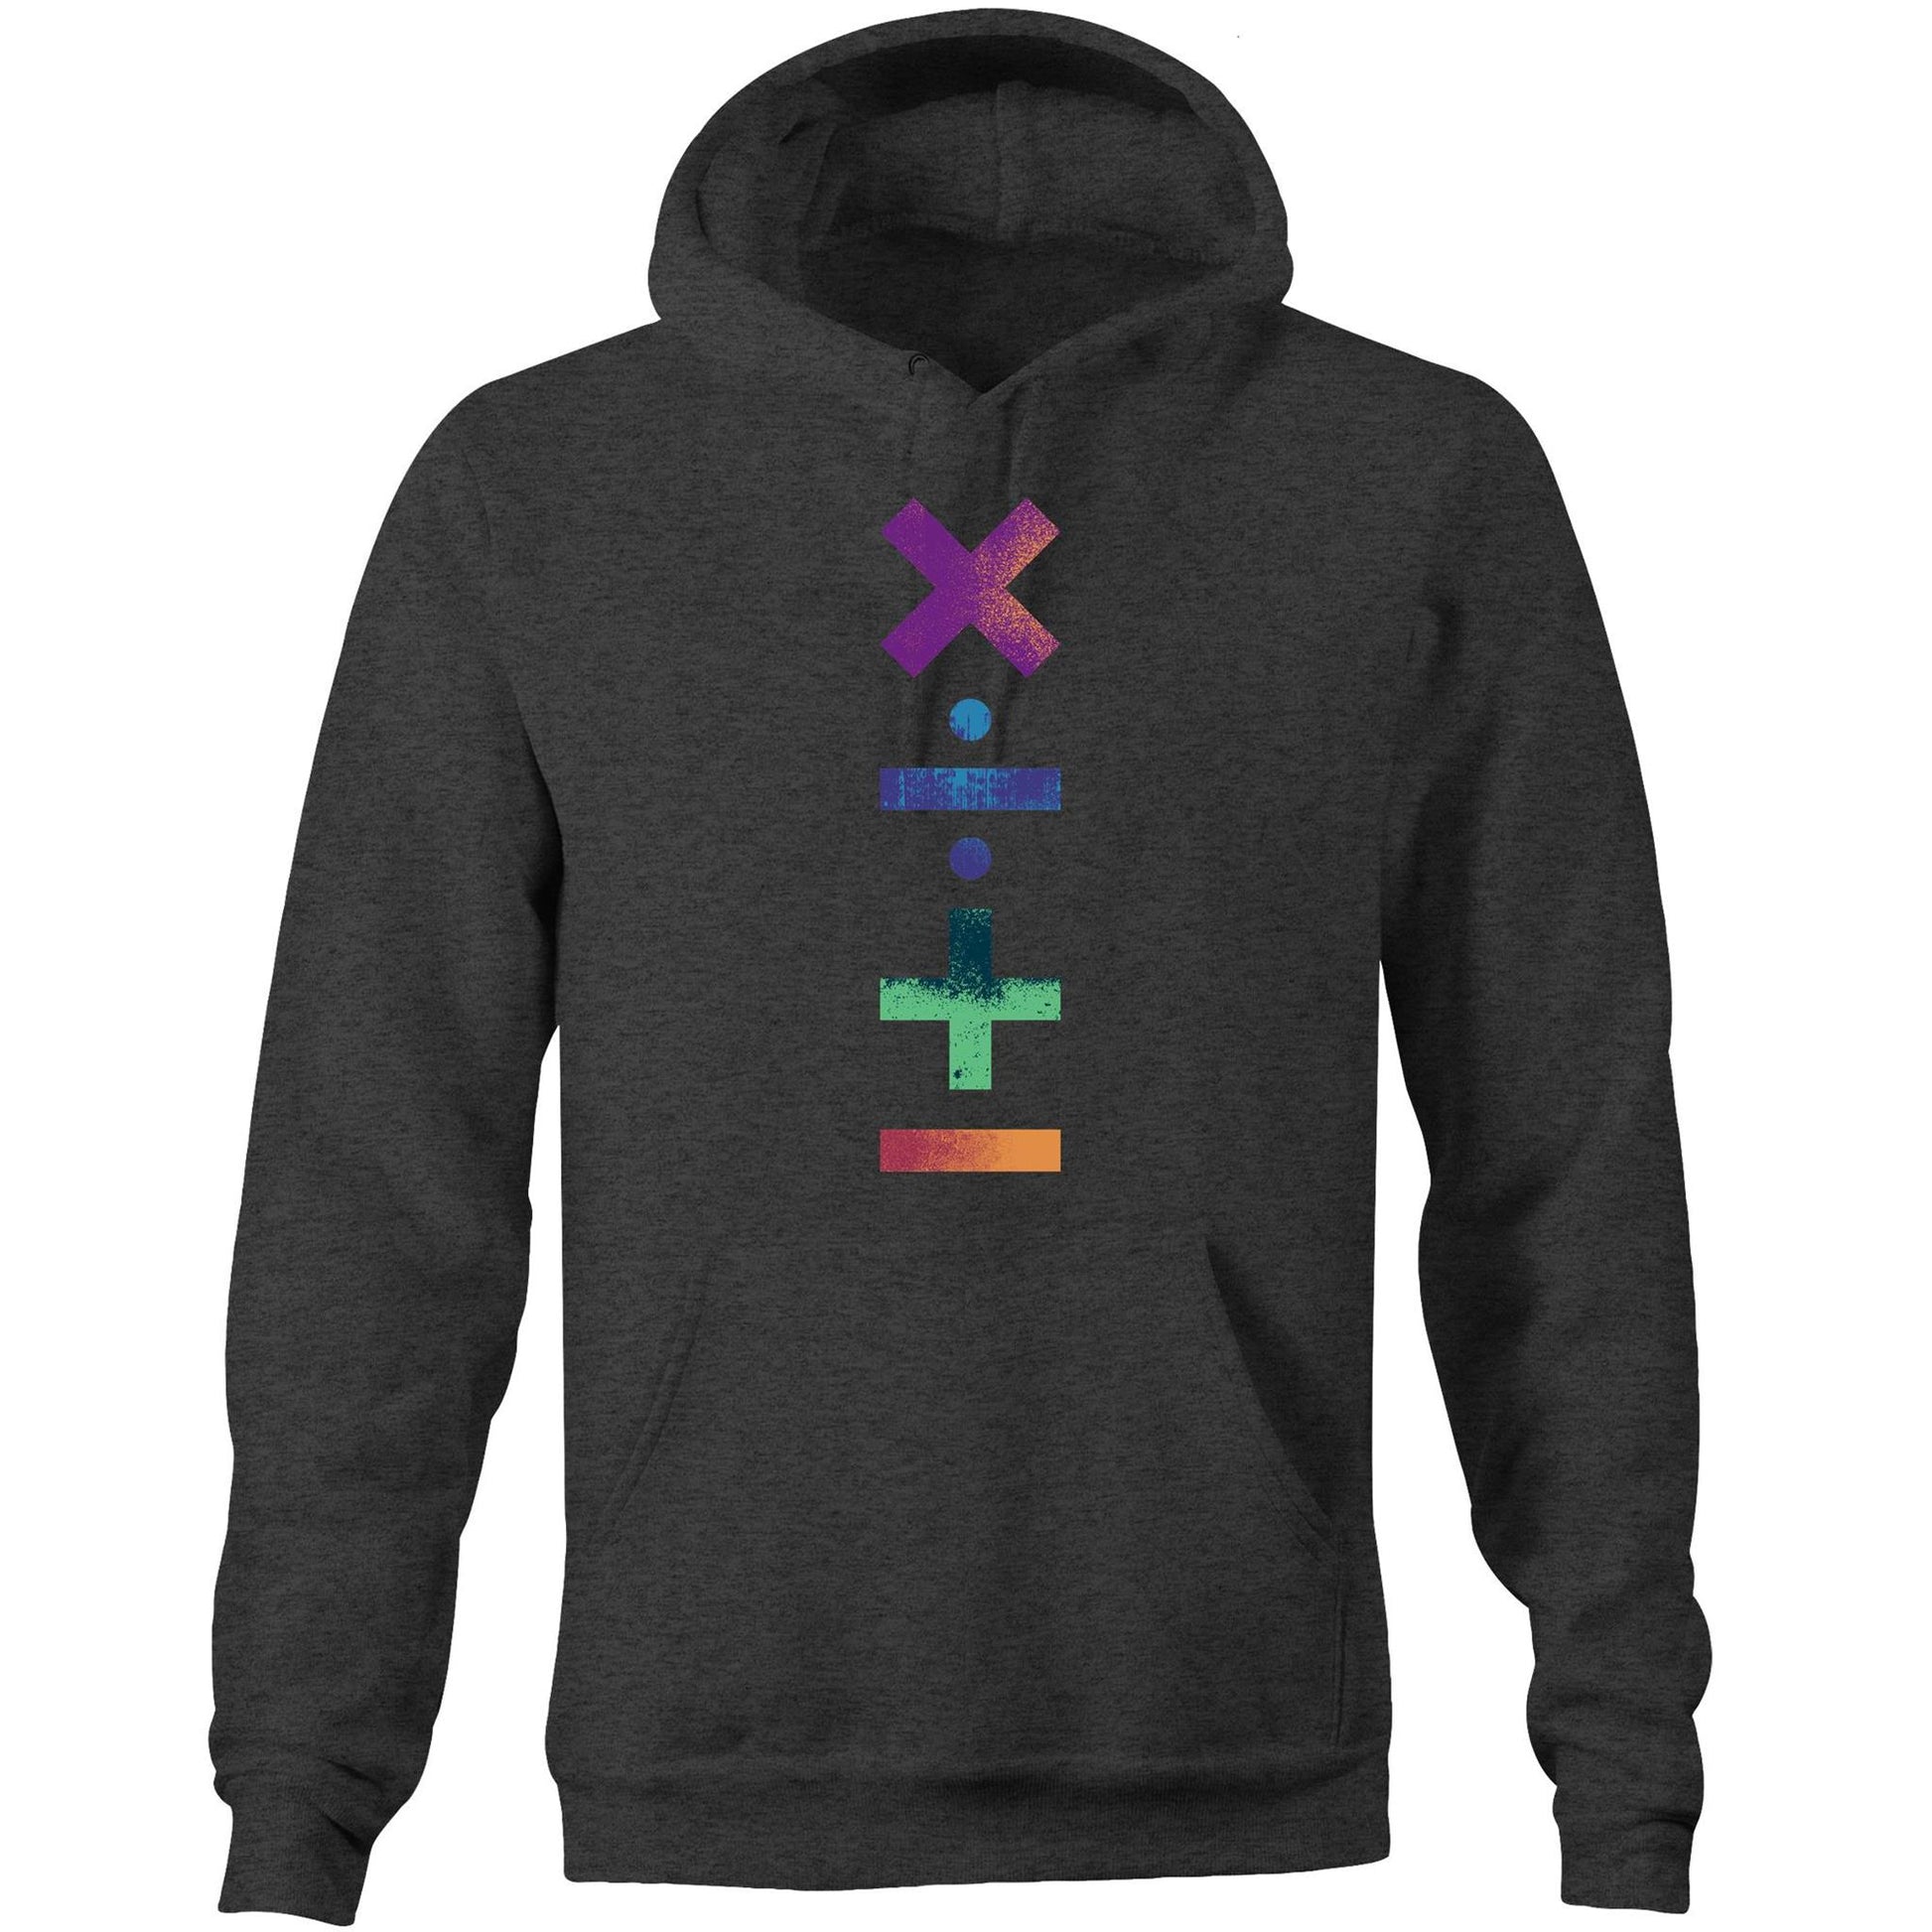 Maths Symbols - Pocket Hoodie Sweatshirt Asphalt Marle Hoodie Maths Science